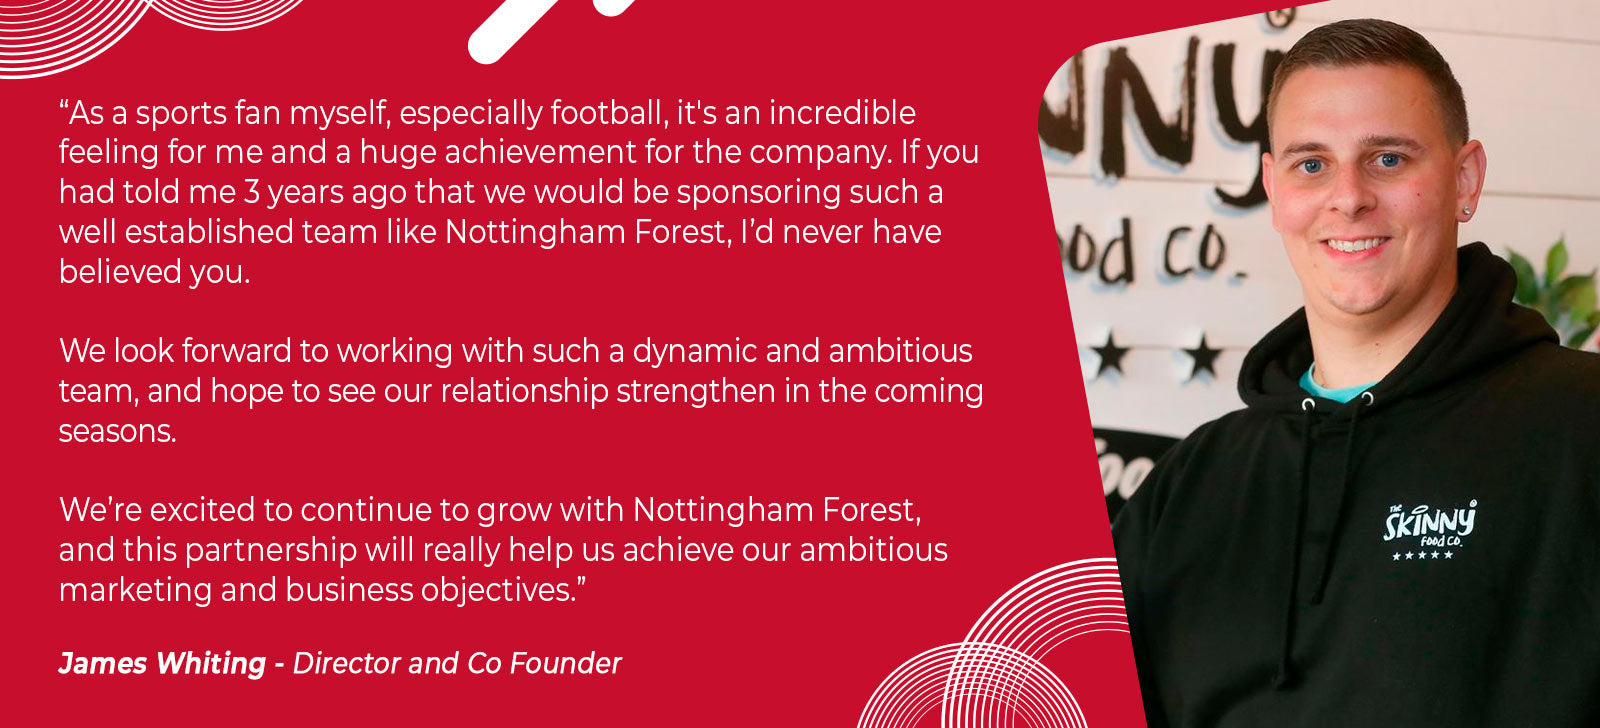 James Whiting szponzorálja a Nottingham Forest Football Club-ot